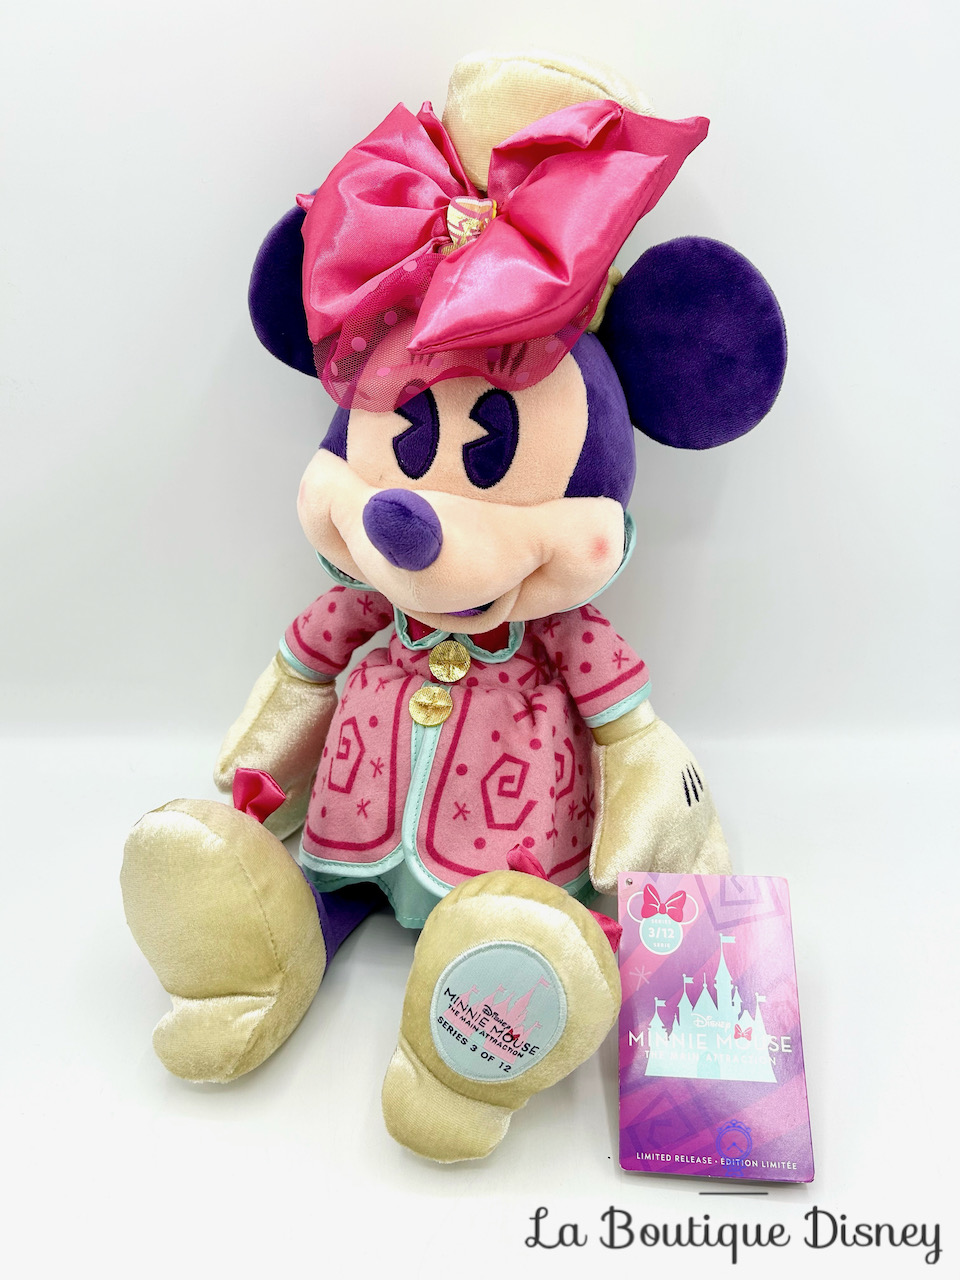 Peluche Minnie Mouse The Main Attraction 3 sur 12 Mad Tea Party Disney Store 2020 Édition limitée 43 cm